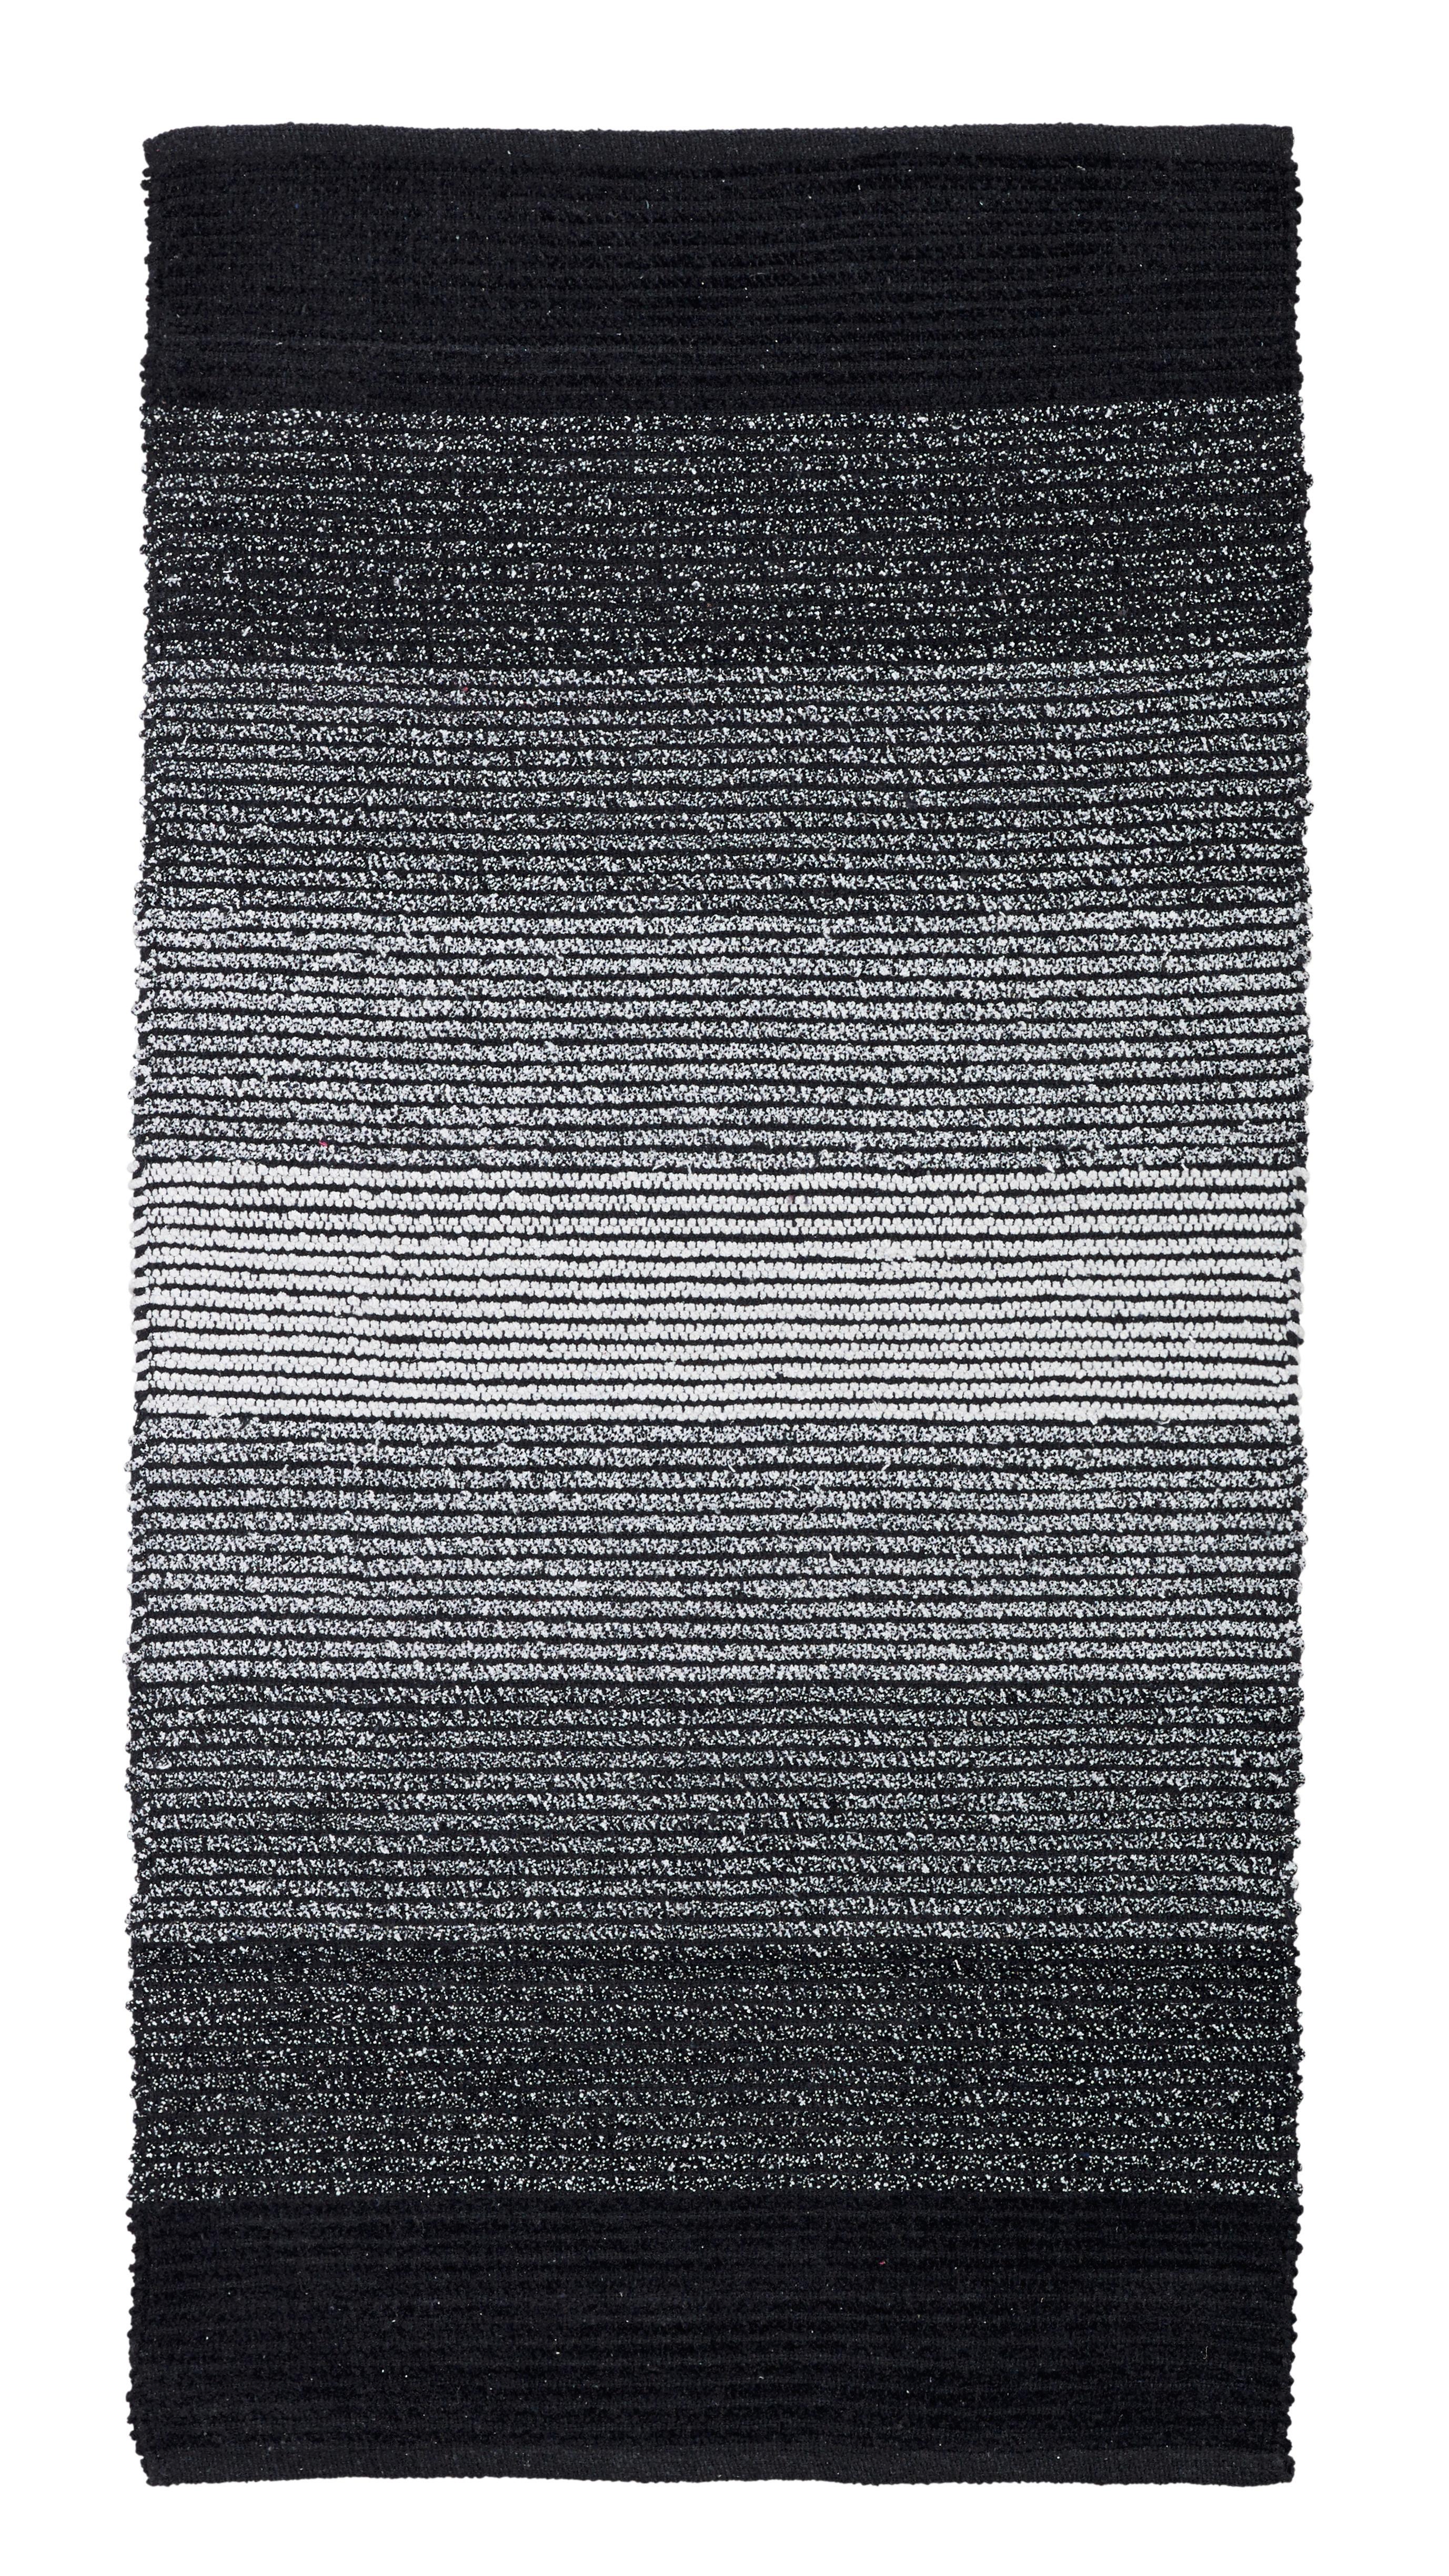 Plátaný Koberec Malto - čierna, Moderný, textil (100/150cm) - Modern Living